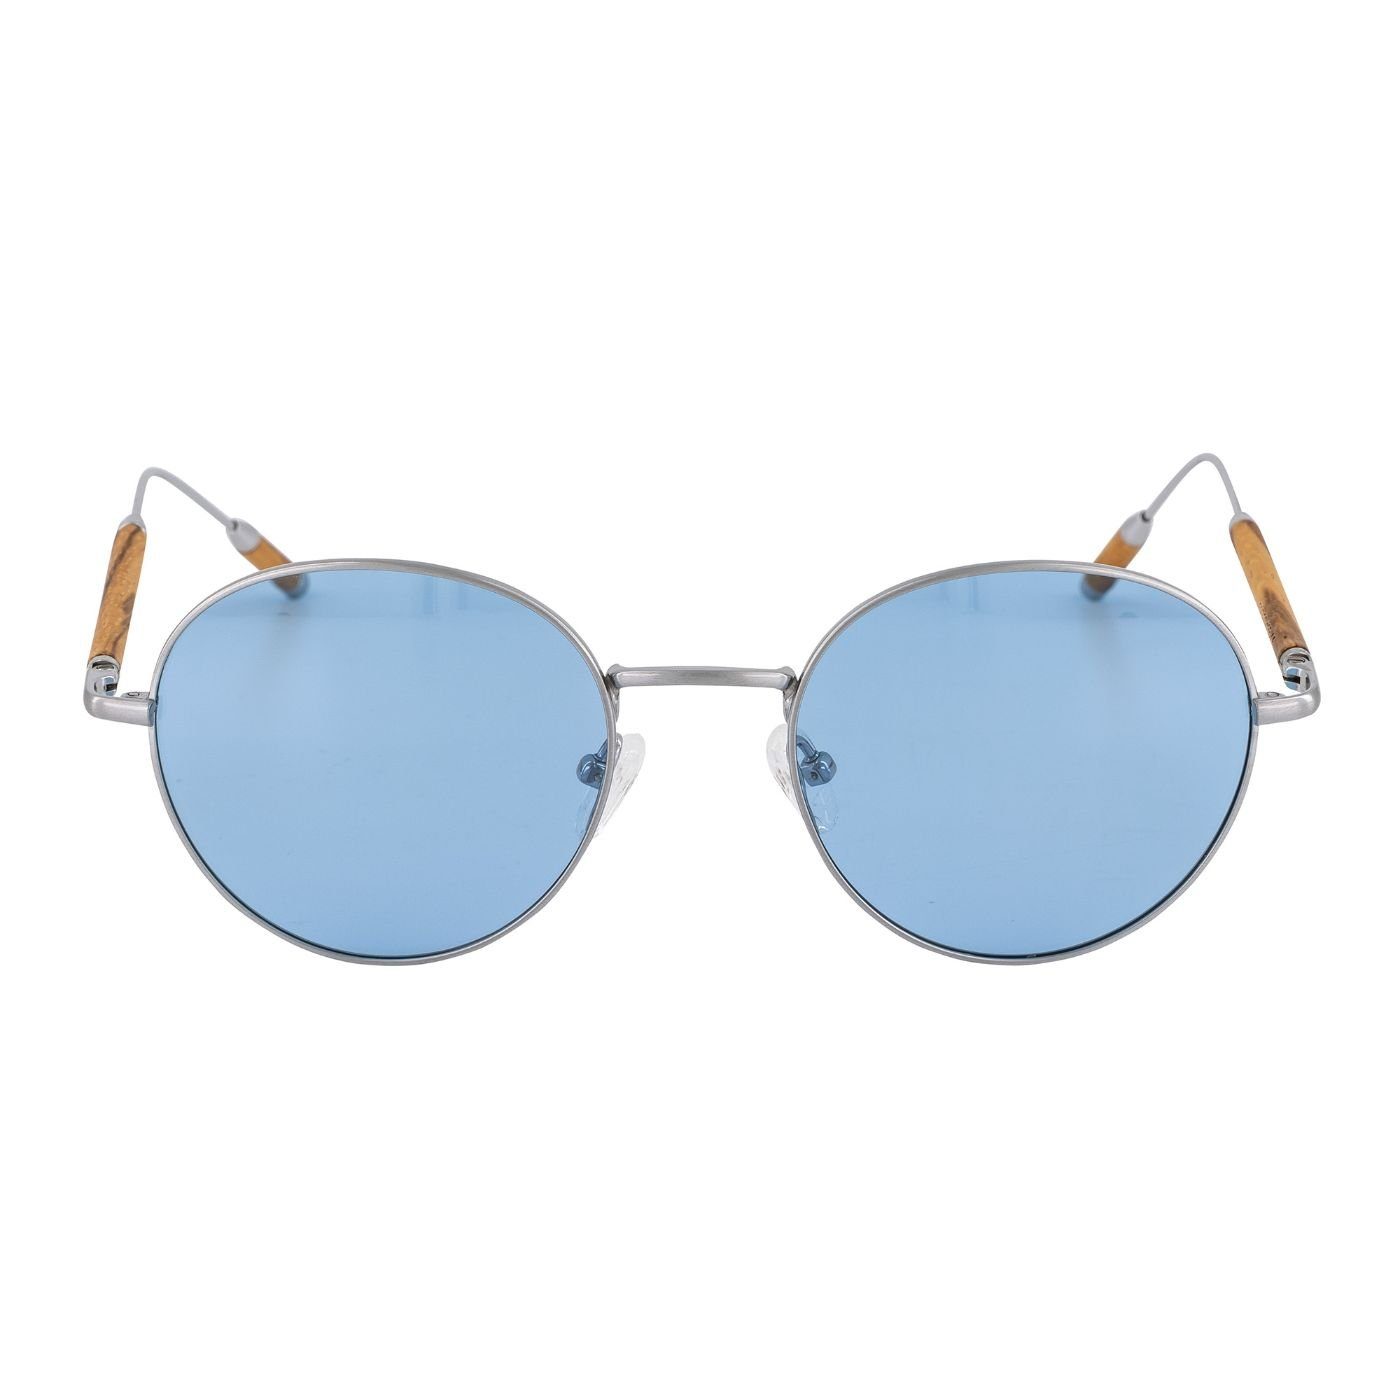 Woodenlove faltbarem Etui) mit Zebrano (Set, Sonnenbrille Brillenputztuch Titan Titanbügel Holzelementen Premium mit Holz-Sonnenbrille und